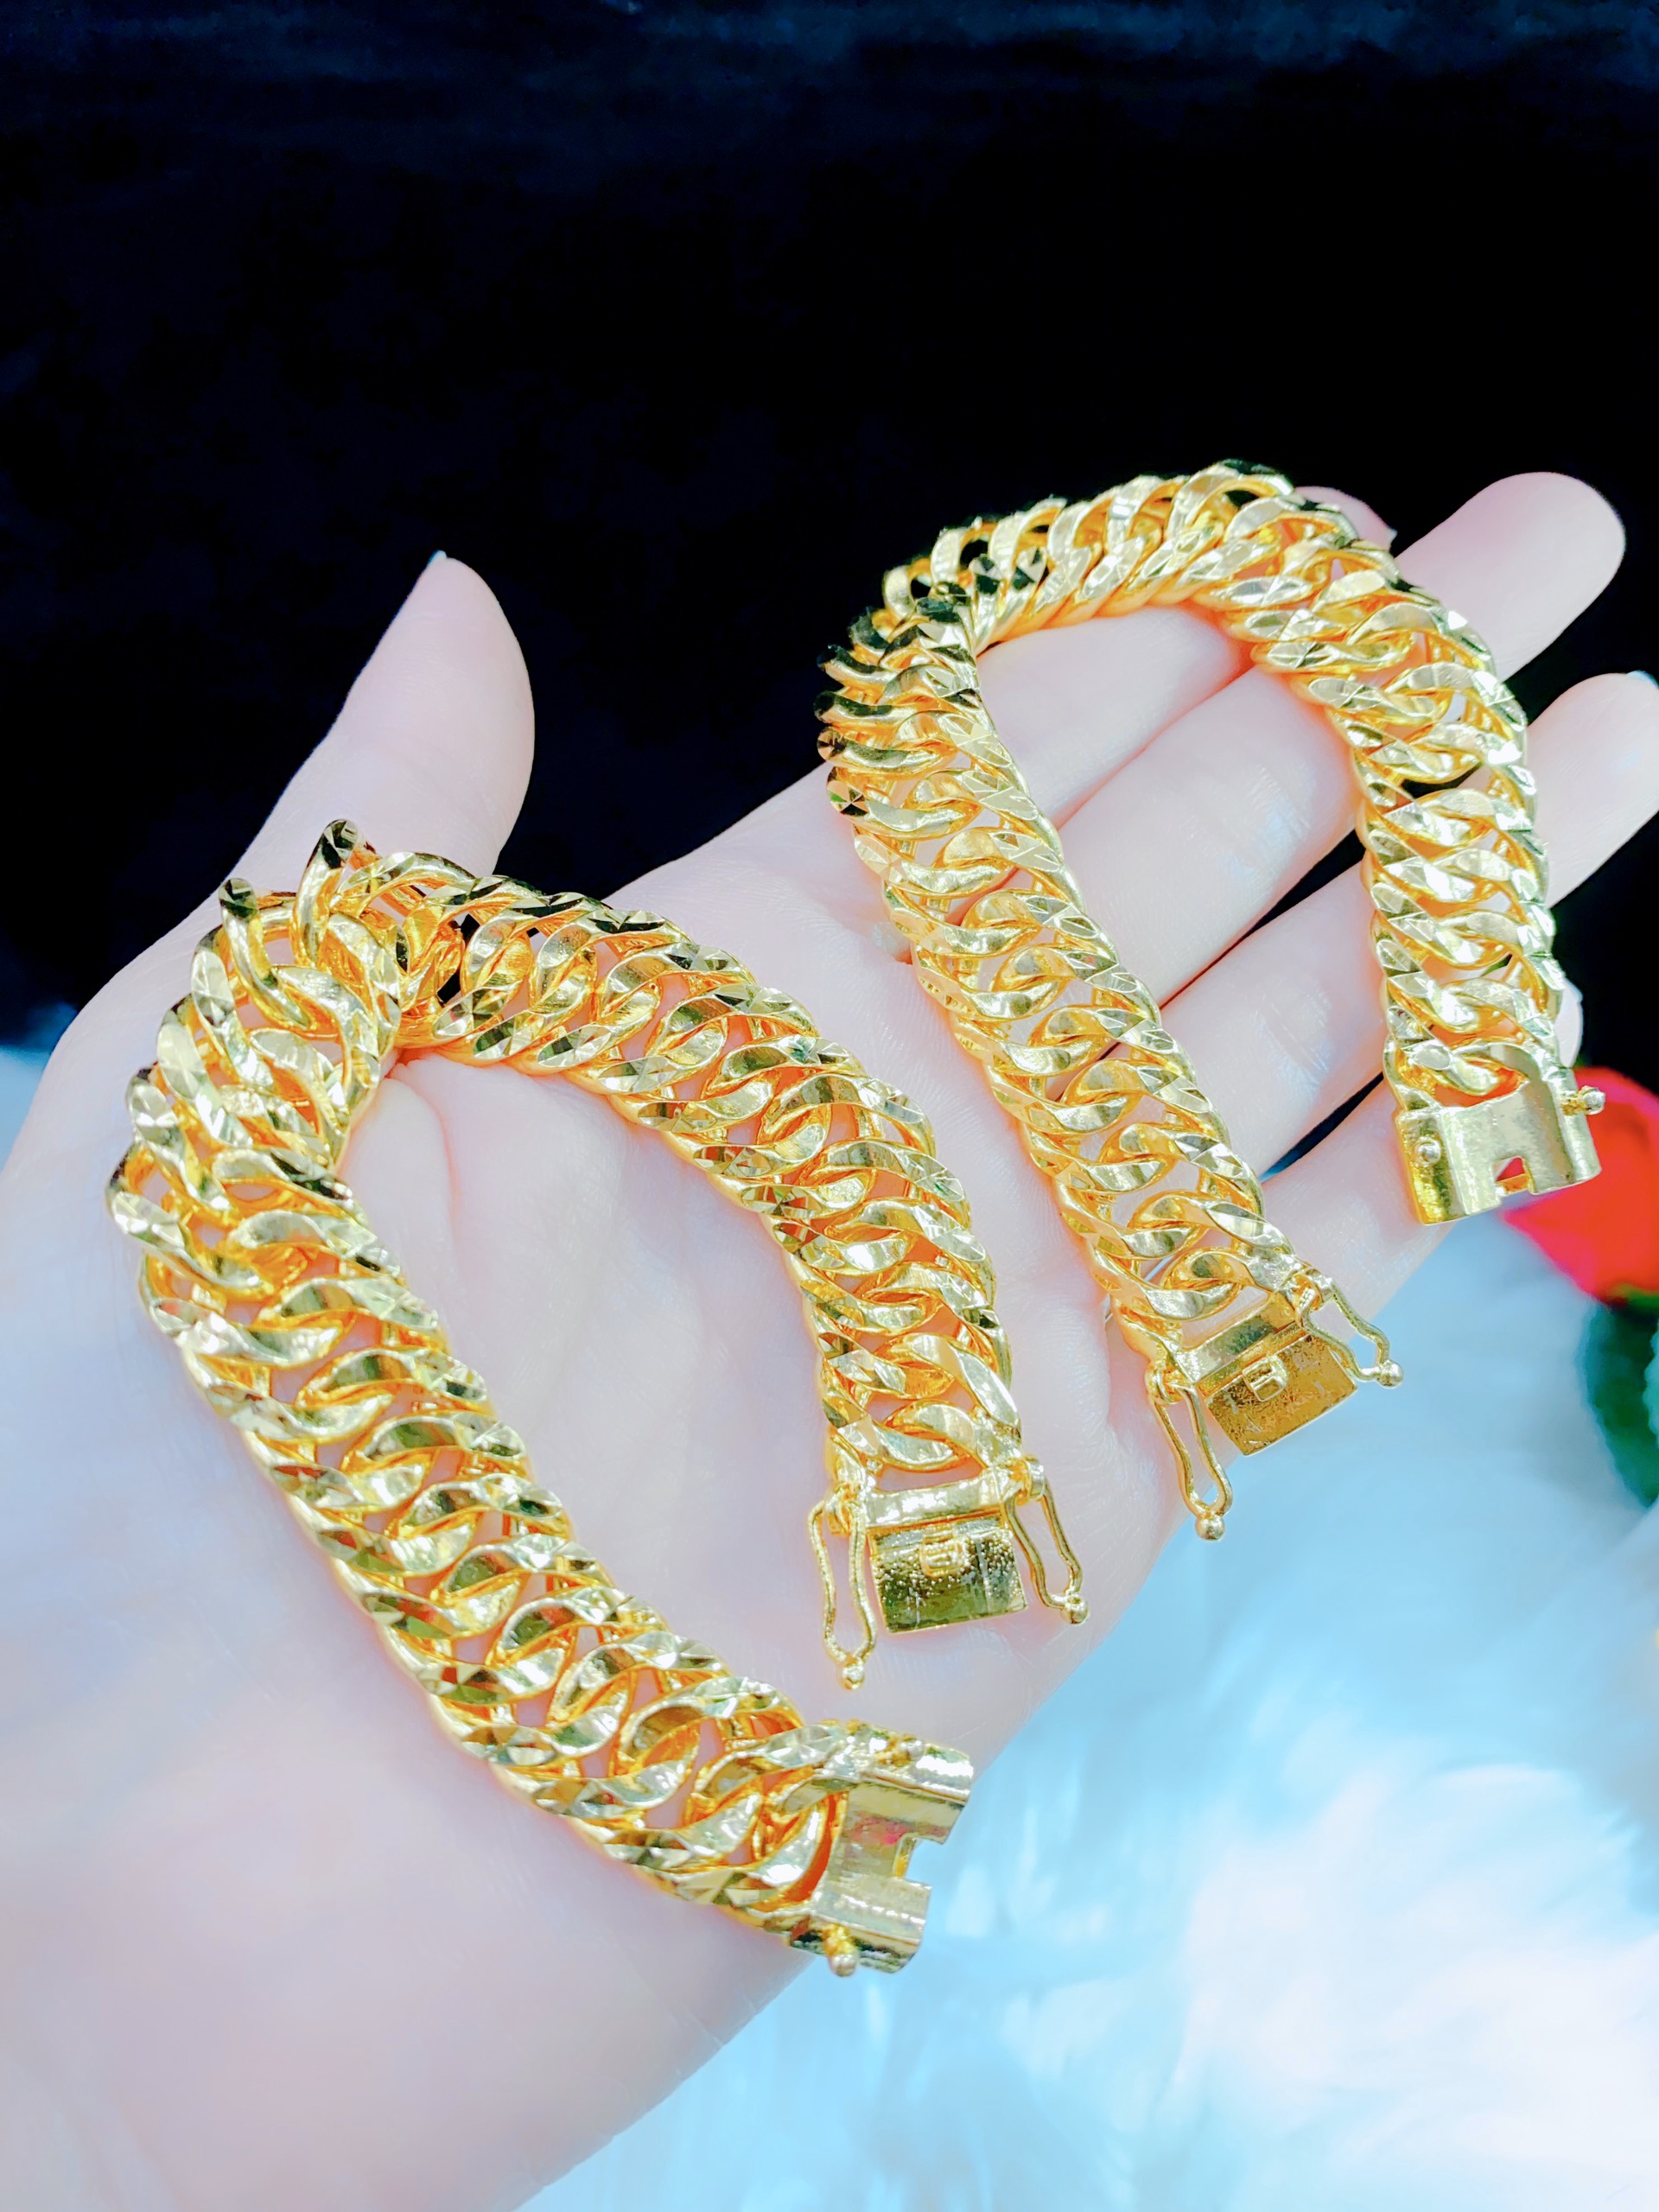 Lắc tay nam 18k 1 cây - Với thiết kế đơn giản nhưng tinh tế, mẫu lắc tay nam 18k 1 cây sẽ làm cho phong cách của bạn trở nên ấn tượng hơn. Với chất liệu vàng 18k cao cấp, sẽ giúp sản phẩm luôn bền đẹp và không bị oxy hóa. Nó thực sự là món đồ trang sức tuyệt vời để nâng cao giá trị và thể hiện cá tính của bạn.

Translation: Men\'s 18k gold bracelet 1 piece - With a simple but sophisticated design, the men\'s 18k gold bracelet 1 piece will make your style more impressive. With premium 18k gold material, the product will always be durable and not oxidized. It\'s truly an amazing piece of jewelry to enhance your value and showcase your personality.